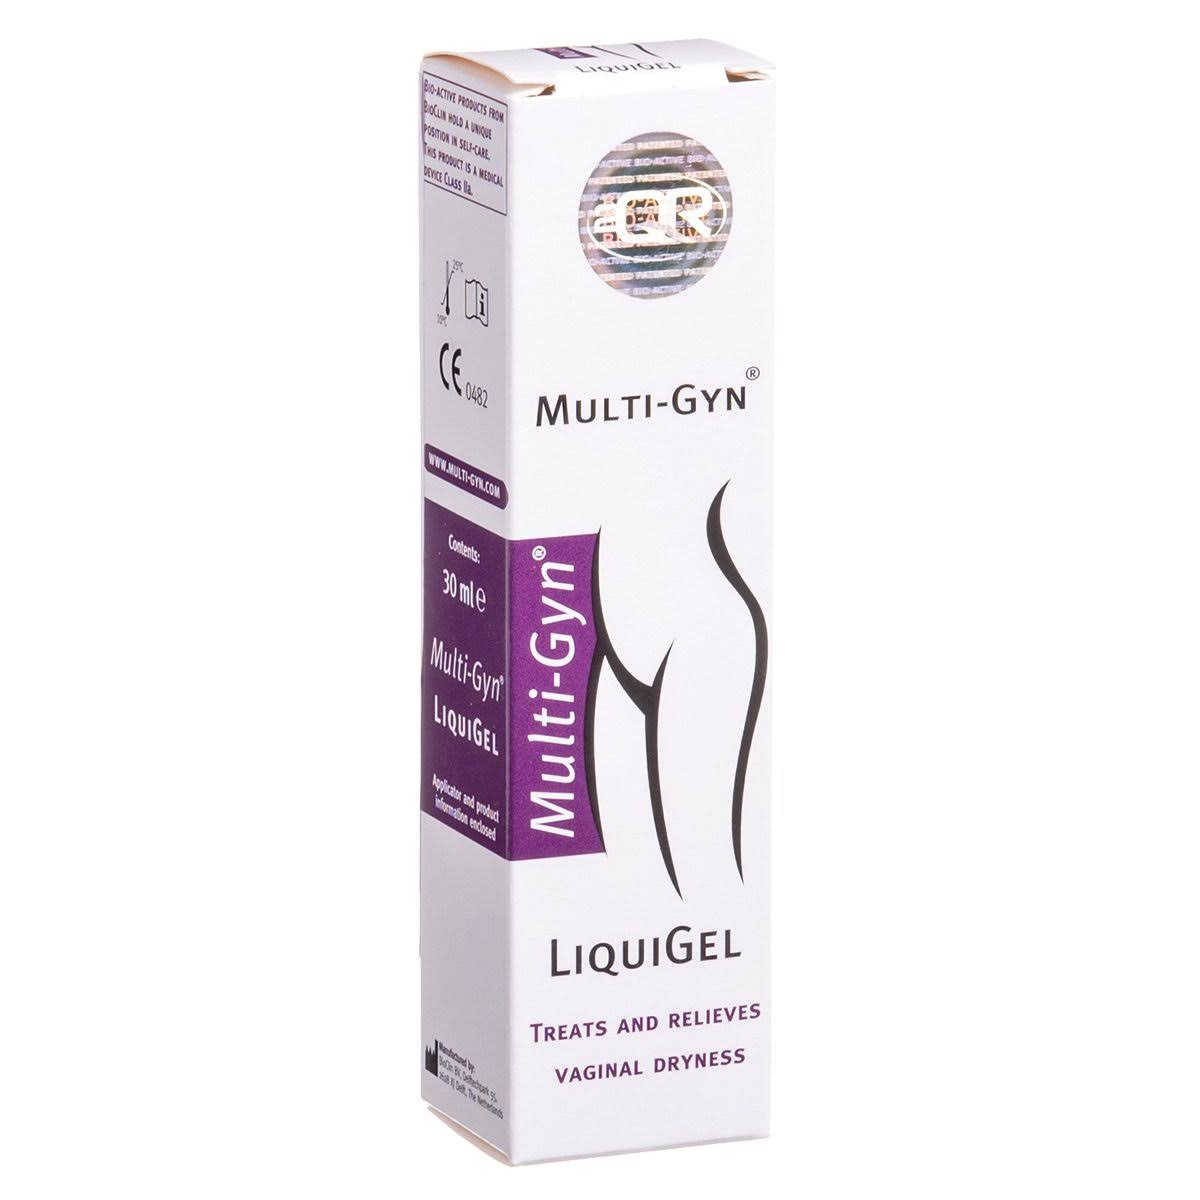 Multi-Gyn Feminine Hygiene Vaginal Liqui Gel - 30ml